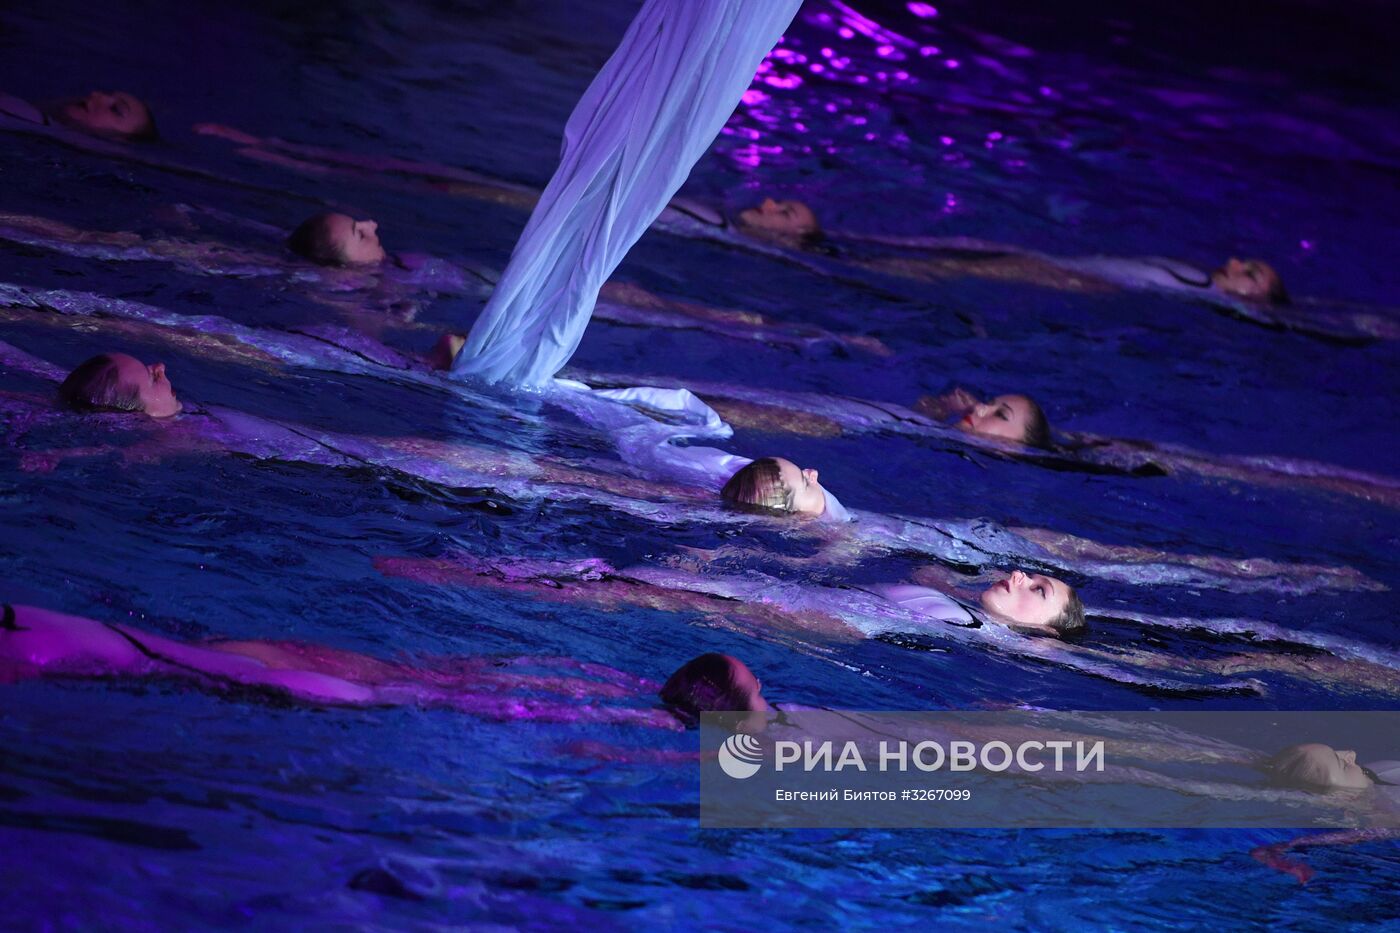 Шоу олимпийских чемпионов по синхронному плаванию "20 лет побед"